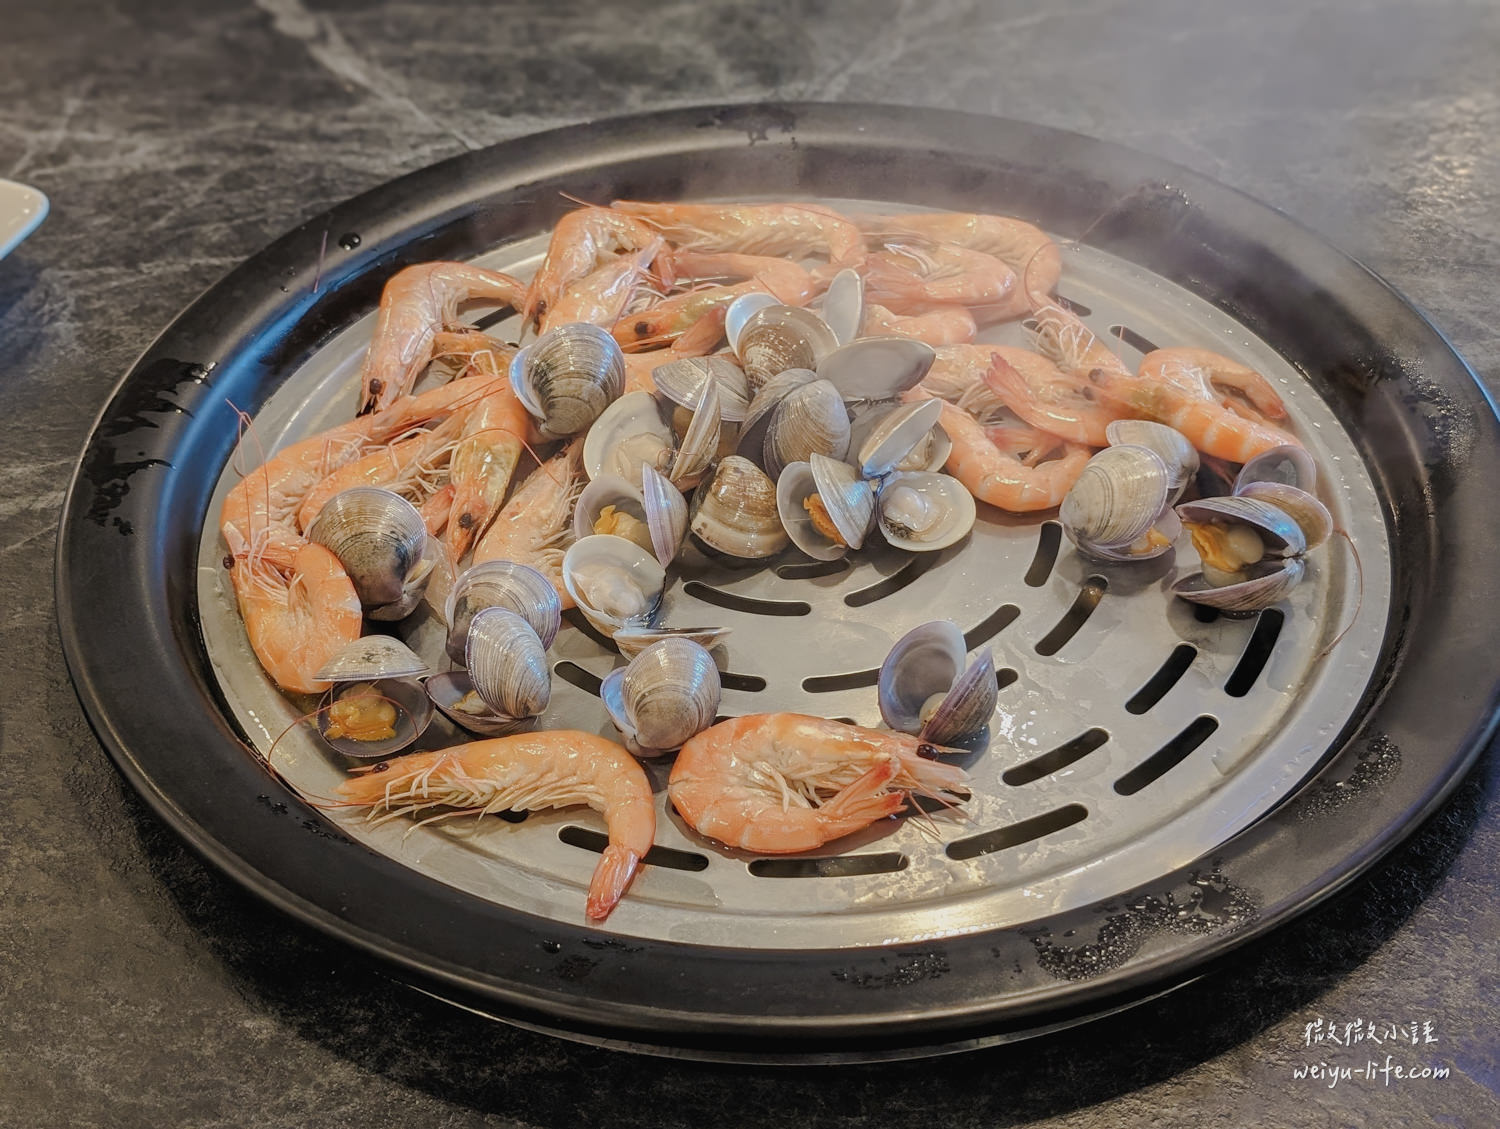 漉海鮮蒸氣鍋雙人豪華套餐鮮活海蝦 300g、季節貝類 300g